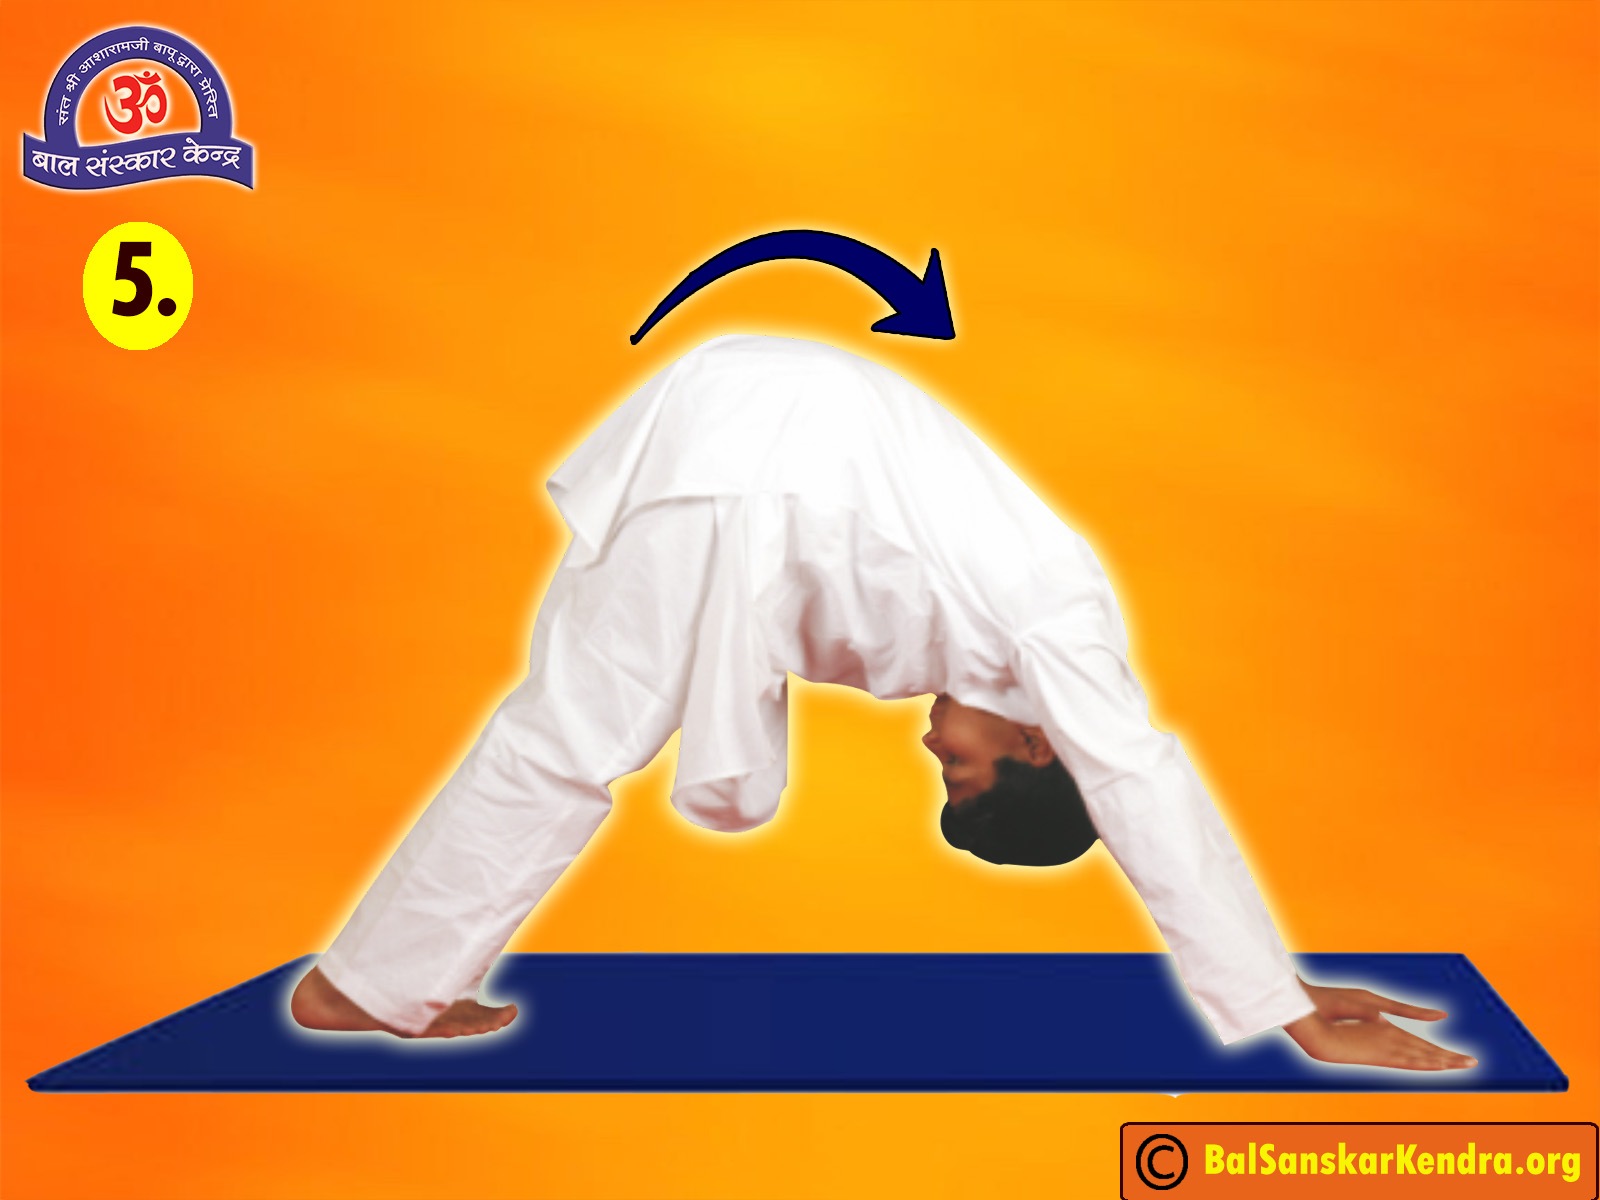 Right way to practice Surya Namaskar | पूर्णतः स्वस्थ रहने के लिए जानें  सूर्य नमस्कार की सही विधि #Yoga #SuryaNamaskar | By Swami RamdevFacebook